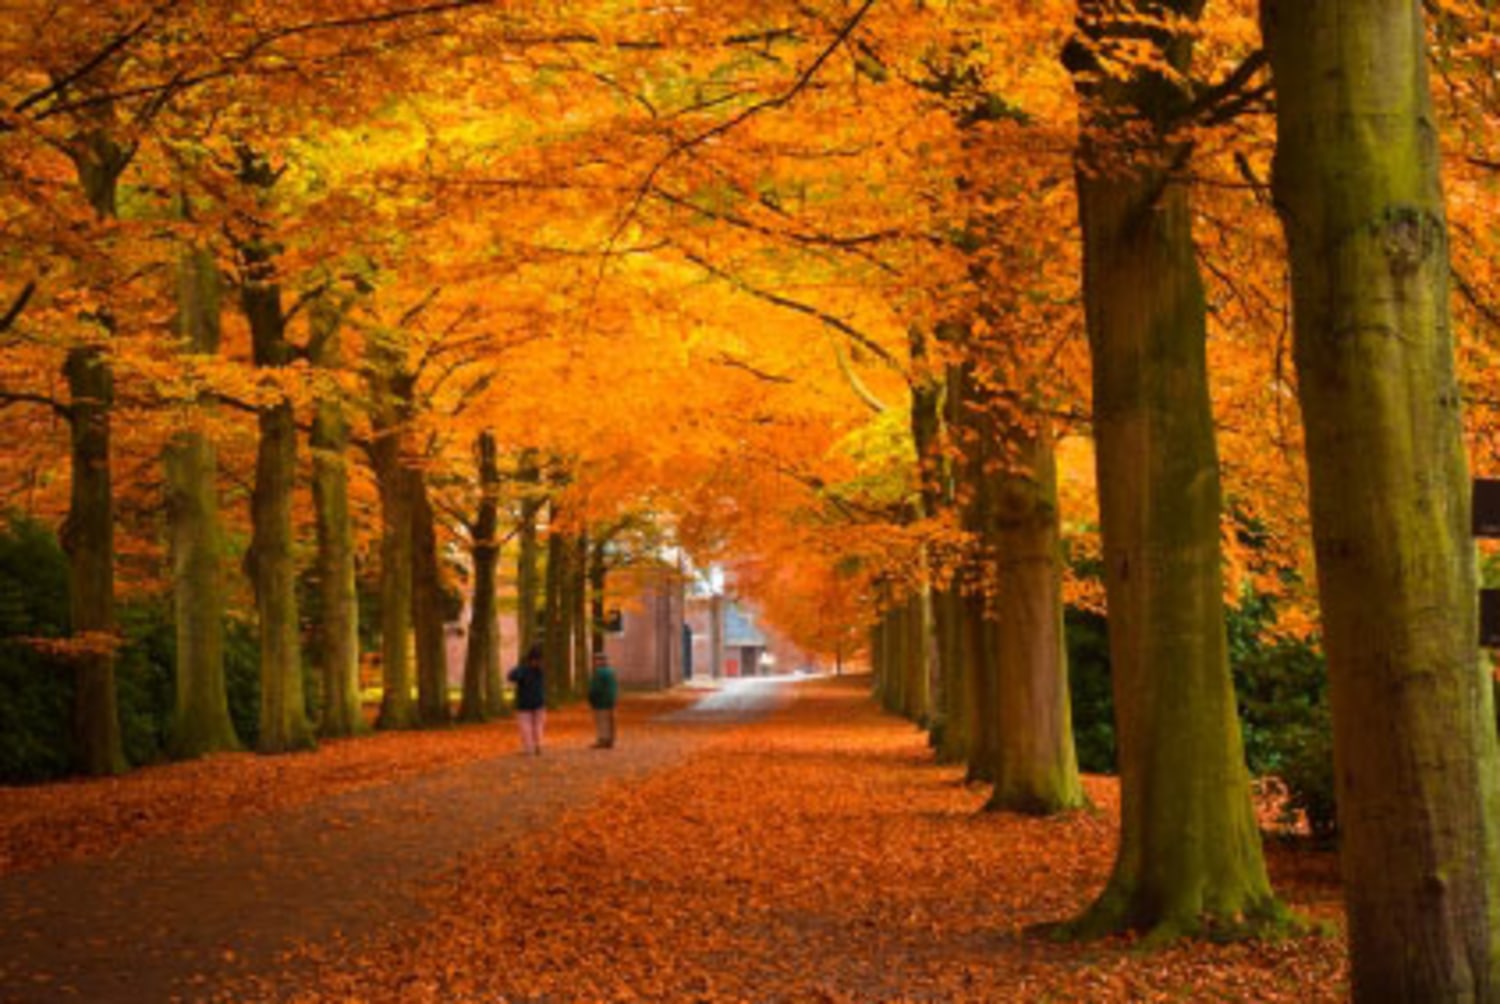 Màu sắc mùa thu: Mùa thu, bài ca của sự nhuộm vàng, sắc đỏ lung linh của lá vàng và lá đỏ, tạo nên một màu sắc hài hòa mang đến sự ấn tượng rực rỡ, đầy cảm hứng và khí chất. Mời bạn đến với bức ảnh đầy màu sắc này để ngắm nhìn sự đẹp hoàn hảo trong mùa thu.